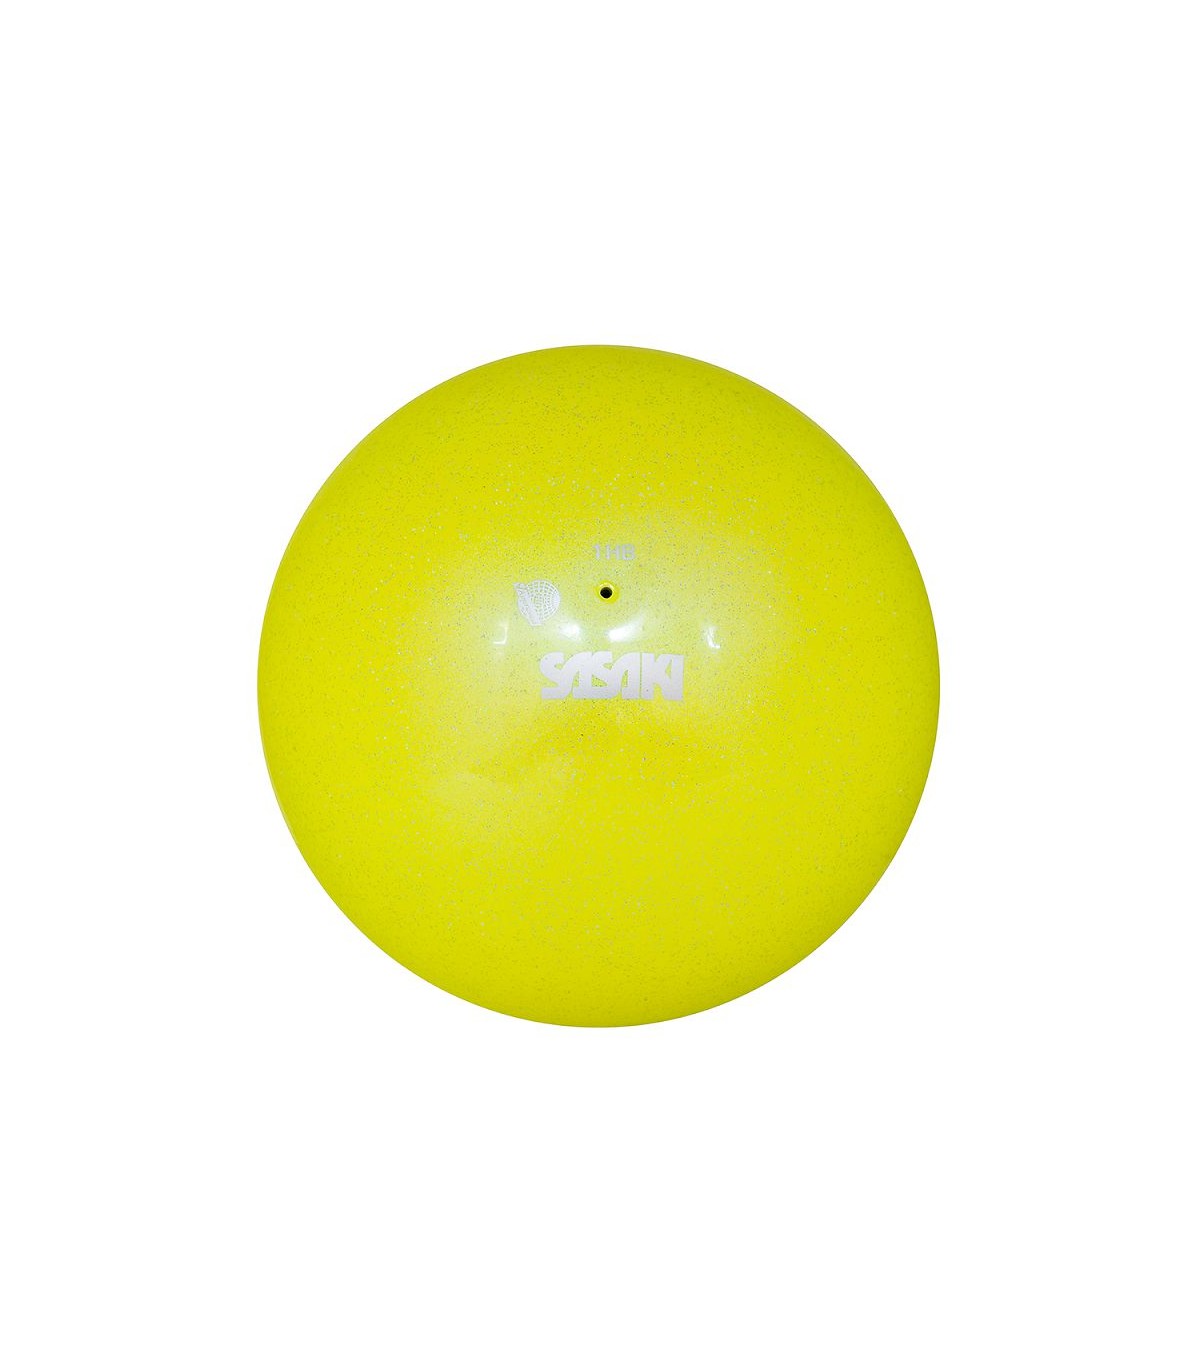 Mpala Rythmikis Gymnastikis Agonistiki Glitter Sasaki M-207AU FIG Lime Yellow MelizDanceShop